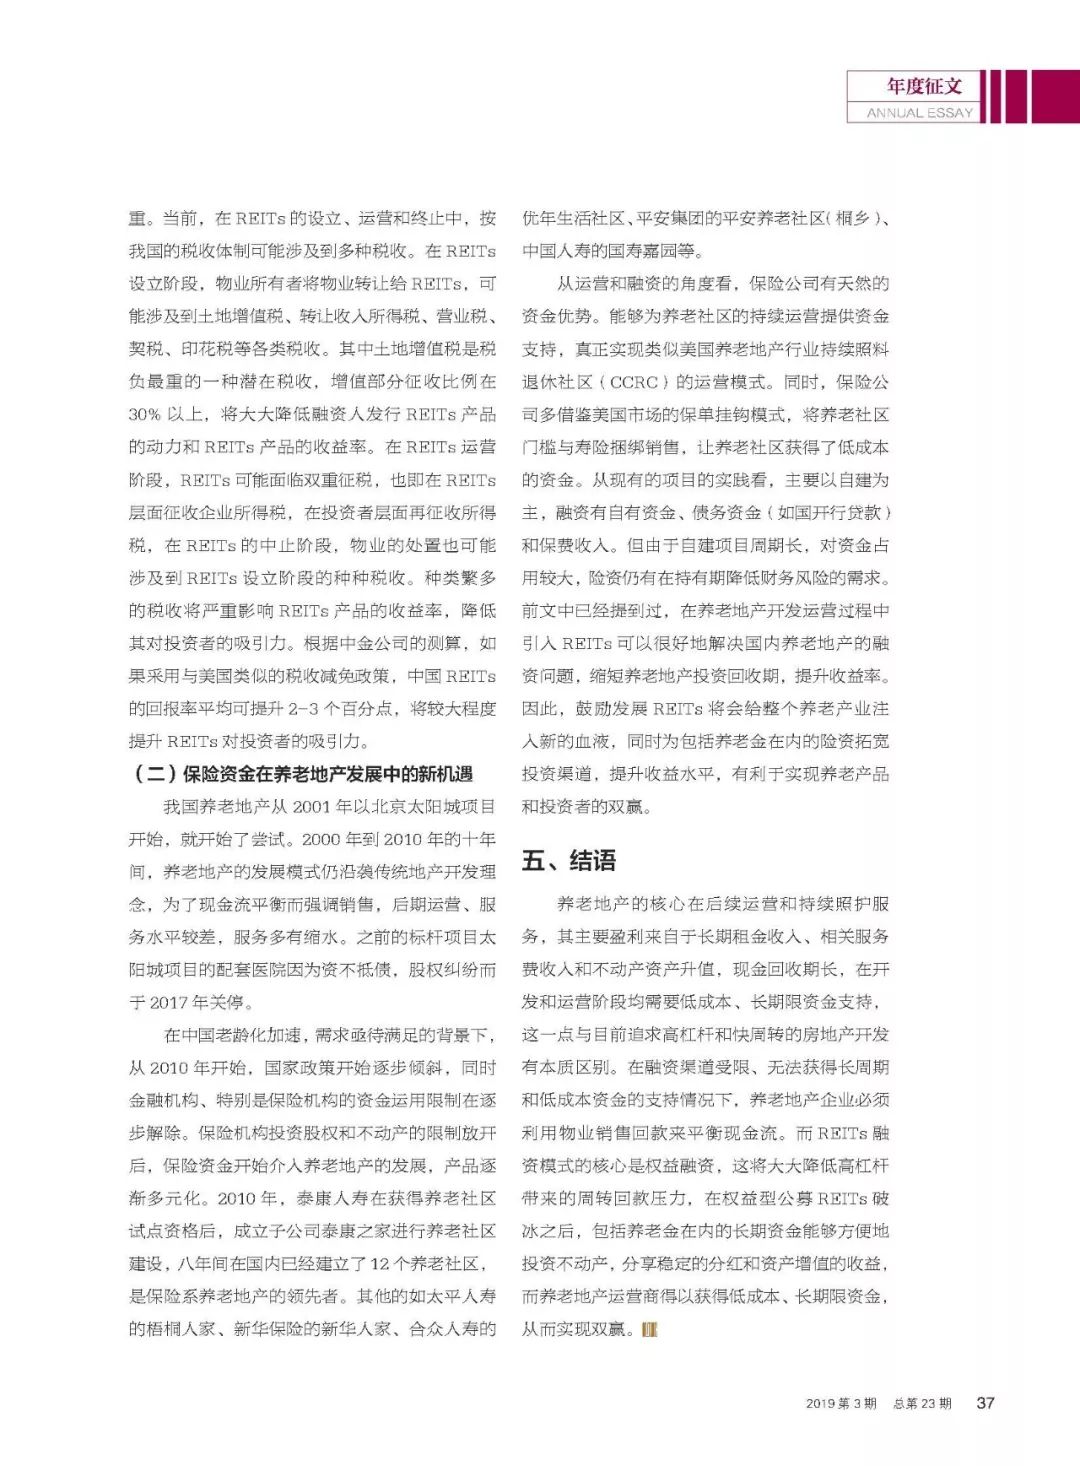 年度征文 | 太平资产潘伟智、陈瑞：REITs模式对中国养老地产发展的启示